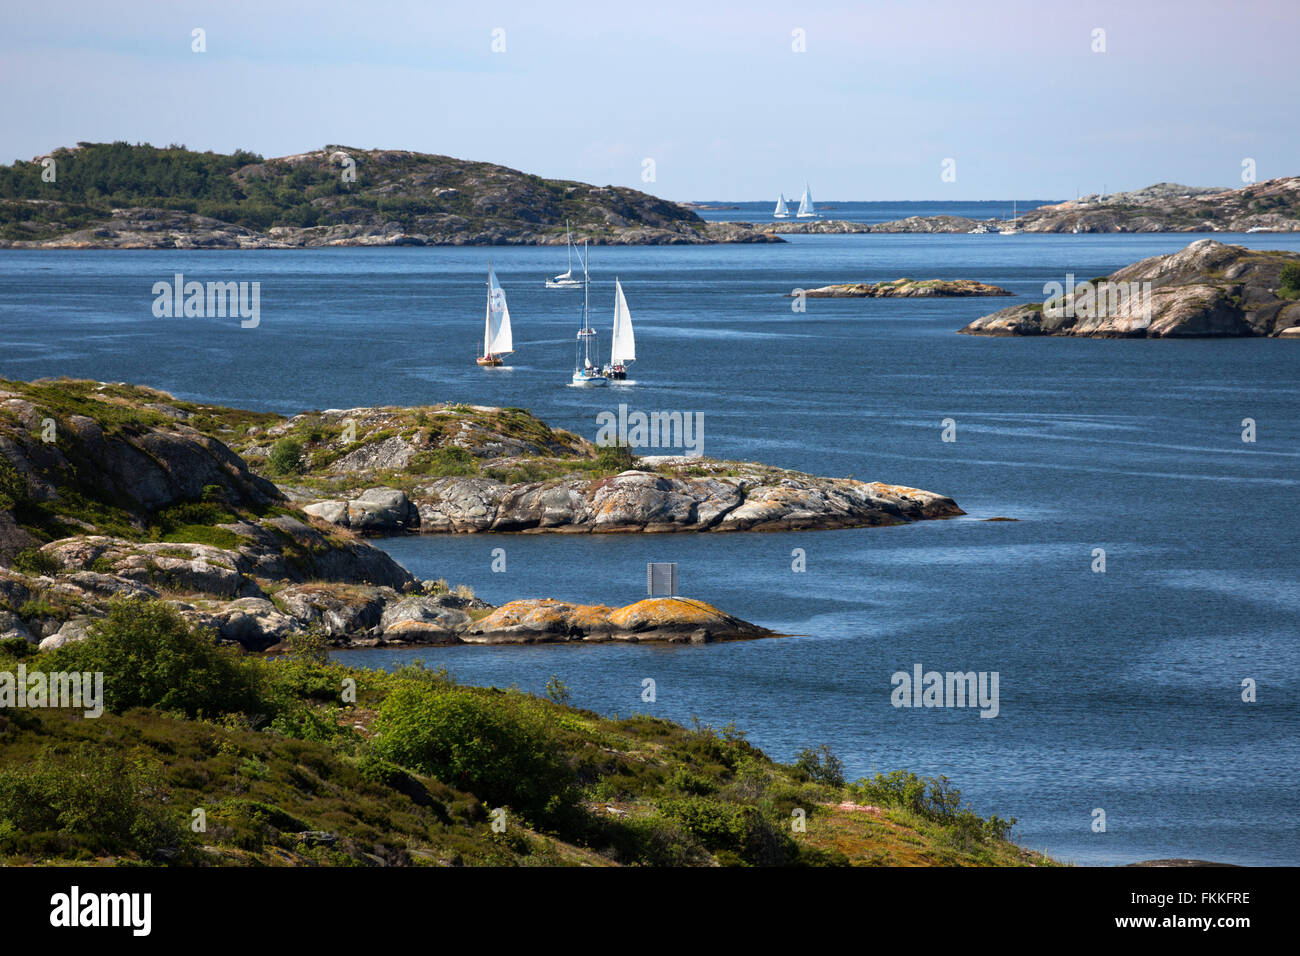 Barche a vela arcipelago attraverso, vicino a Marstrand, a sud-ovest della Svezia, Svezia, Scandinavia, Europa Foto Stock